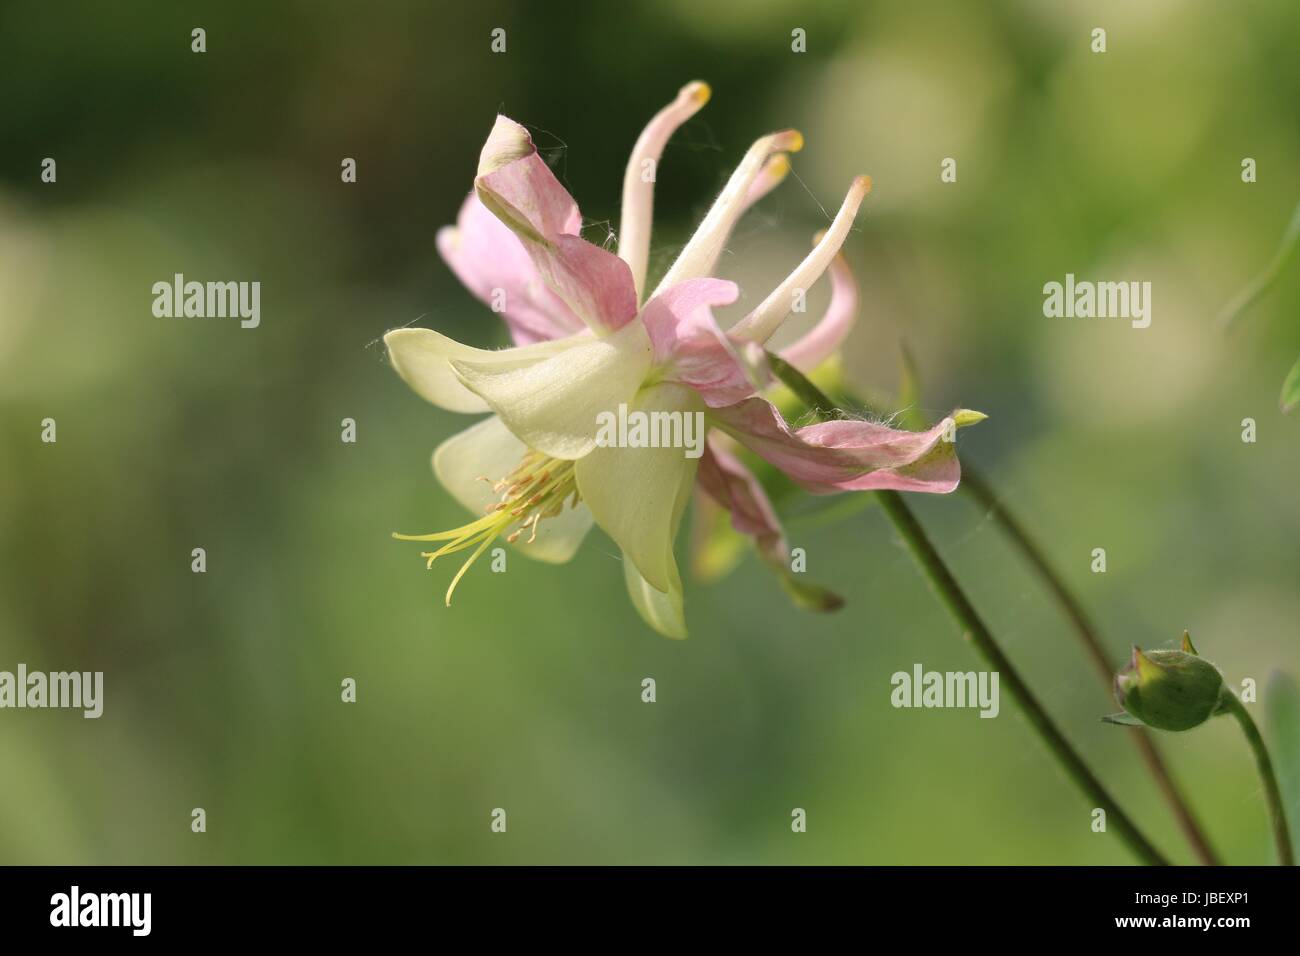 Rosa Akeleien Blume, Columbine oder Grannys Bonnet zeigt rosa angespornt Kelchblätter und cremefarbene Blütenblätter, Seitenansicht auf einem natürlichen grünen Hintergrund. Stockfoto